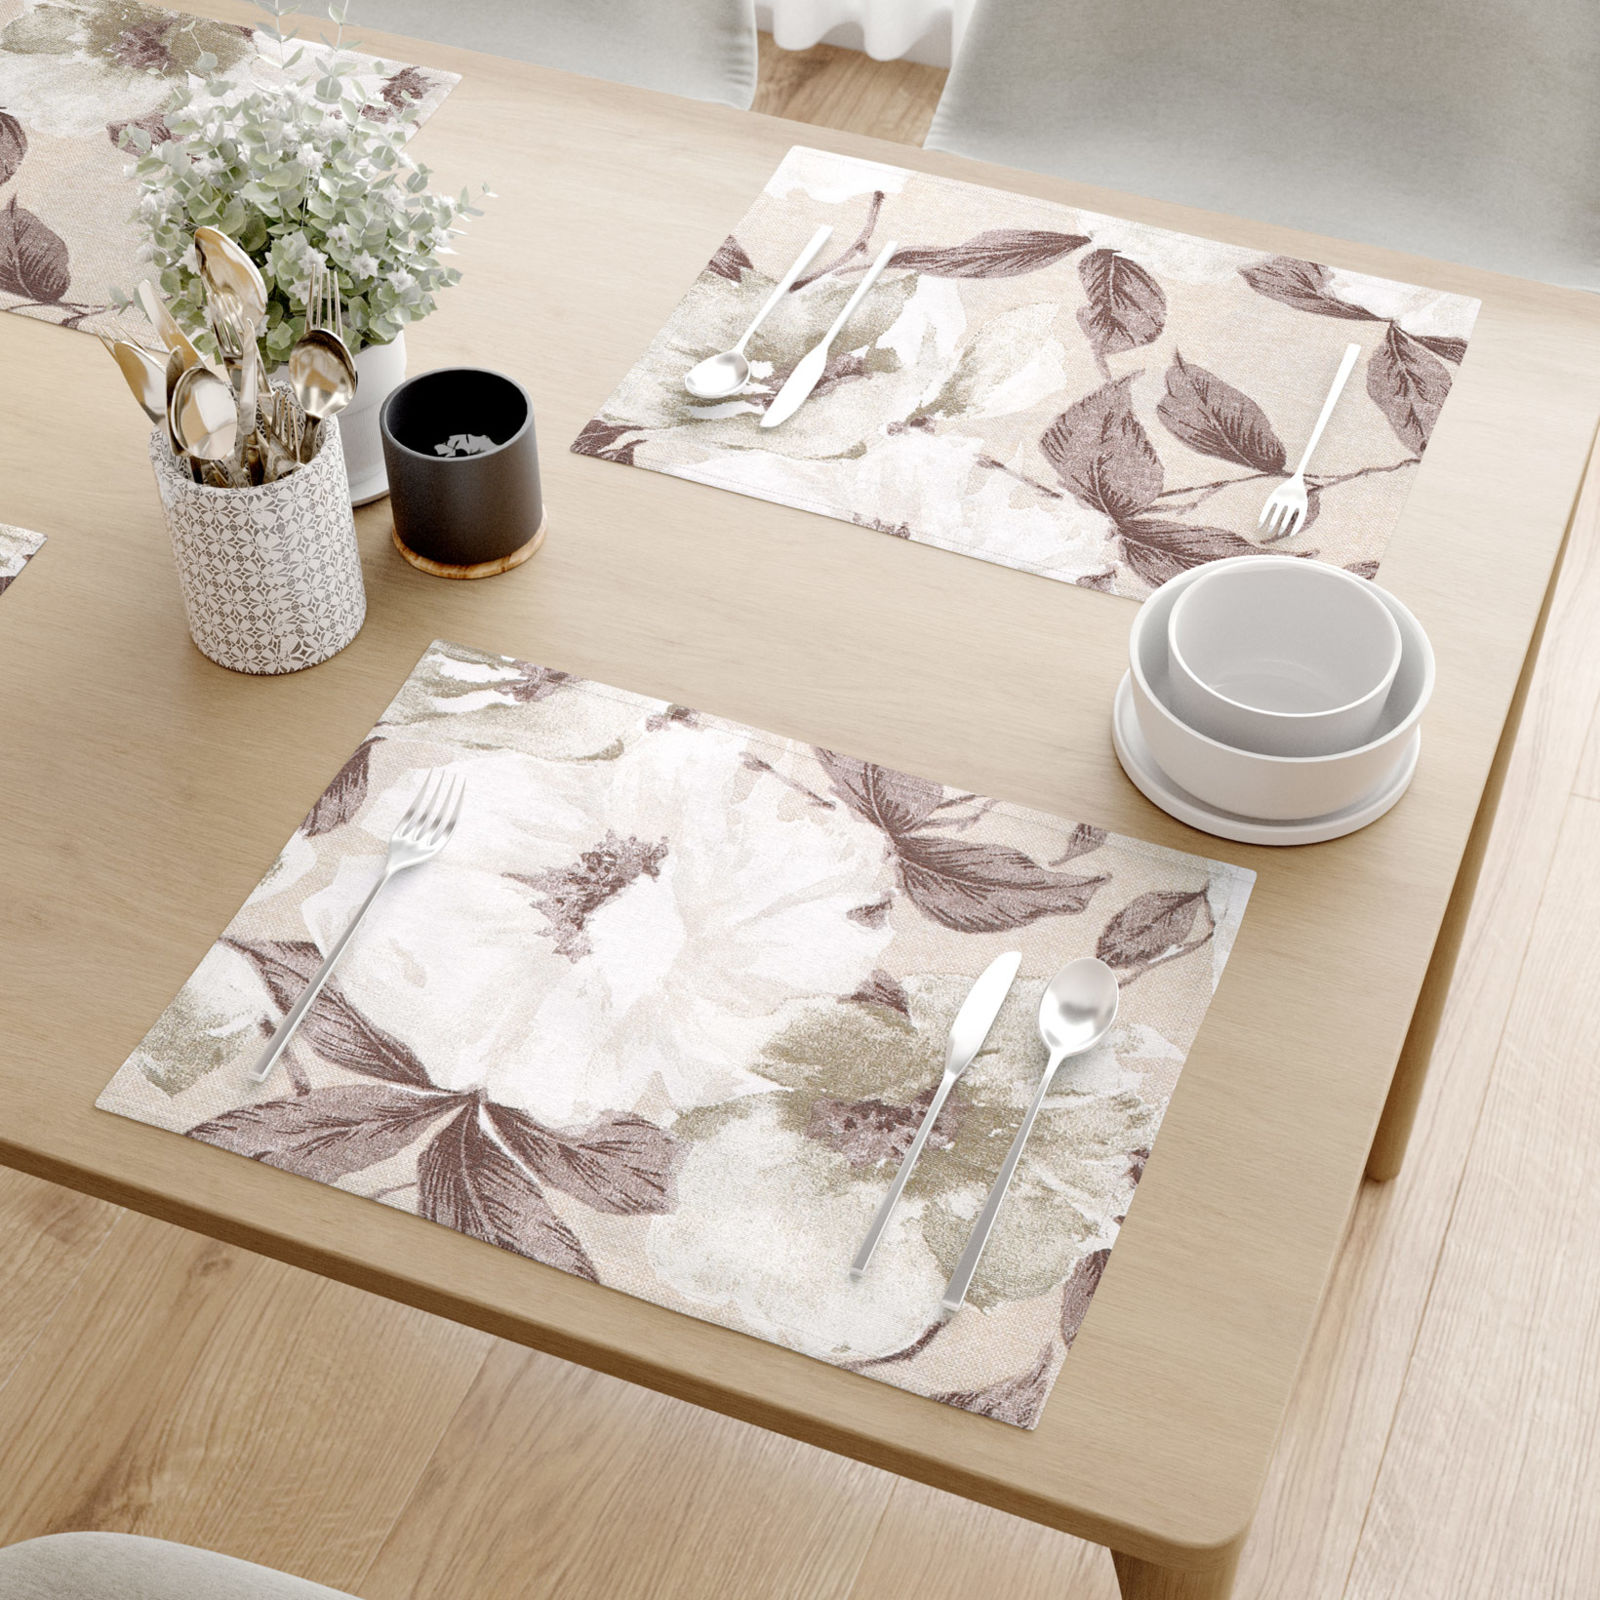 Prostírání na stůl Loneta - bílé a hnědé květy s listy - sada 2ks